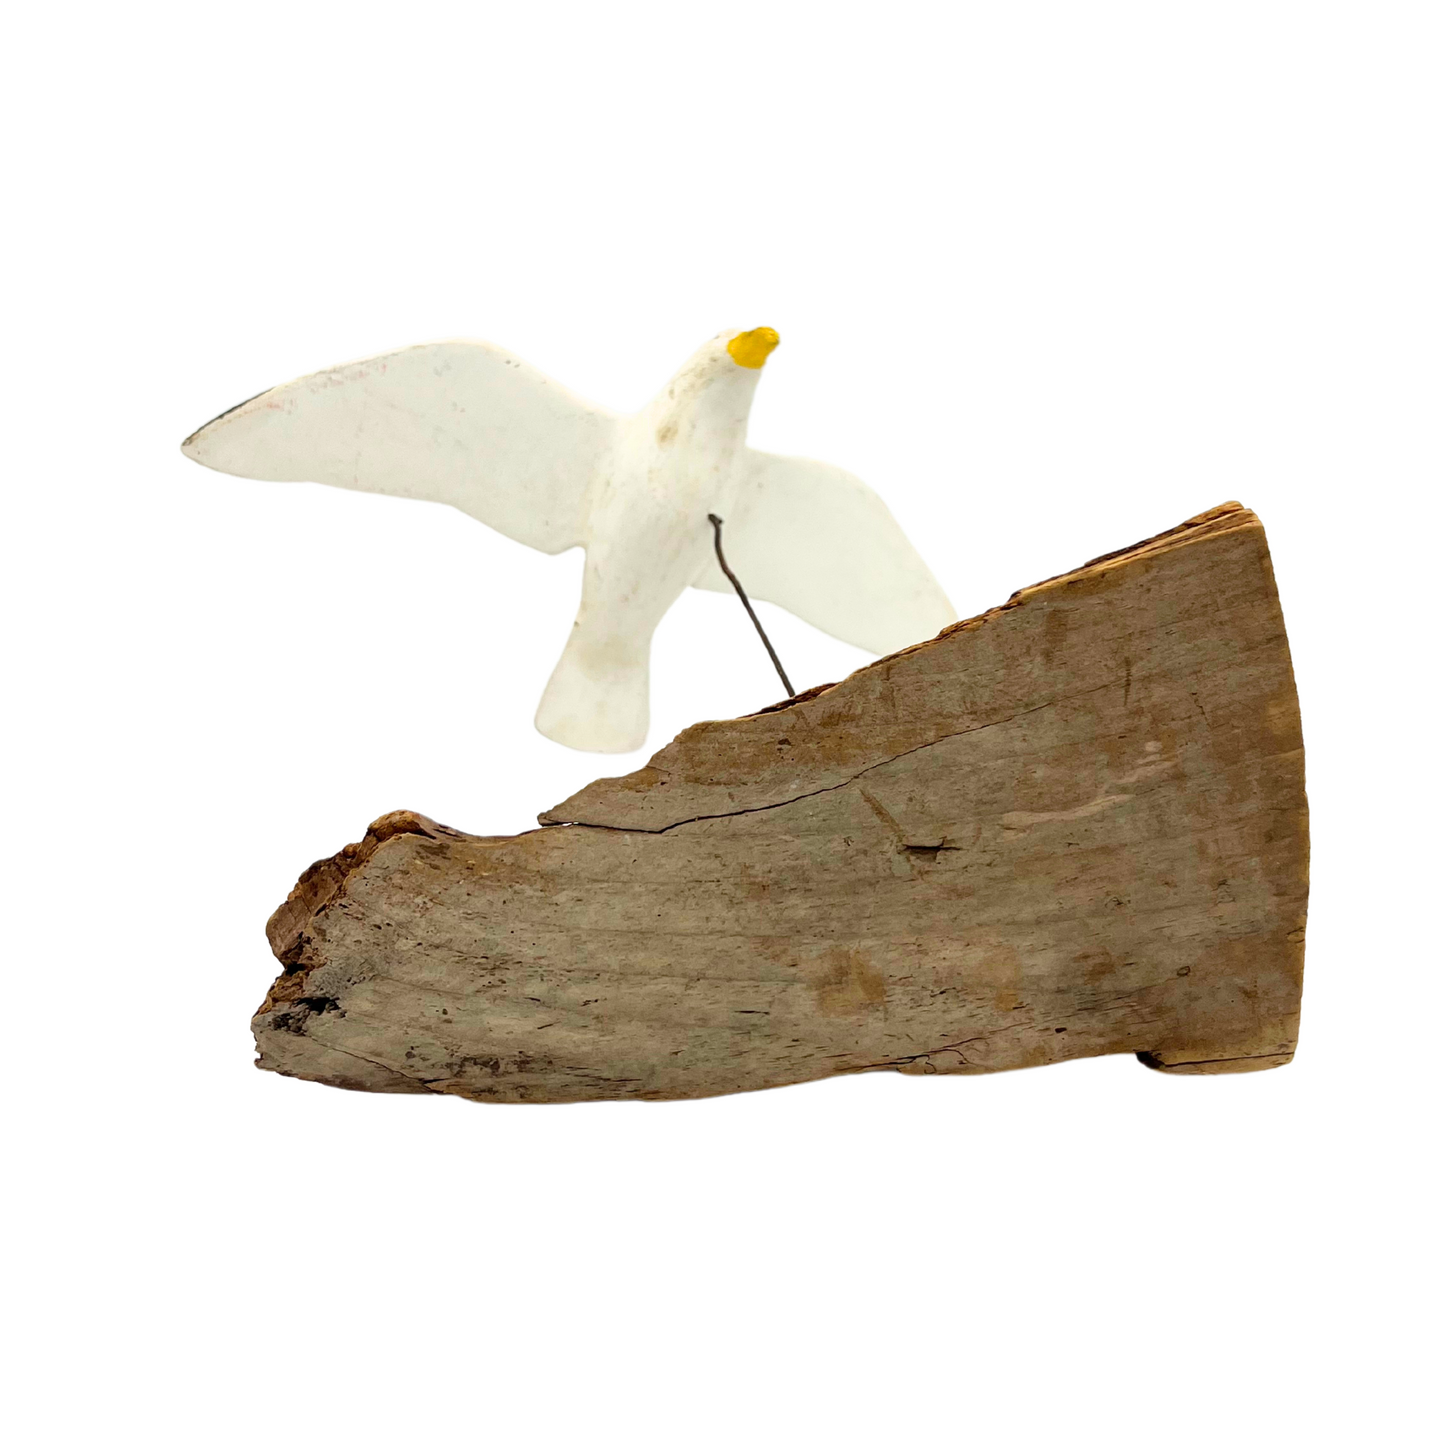 vintage handmade flying seagull over driftwood